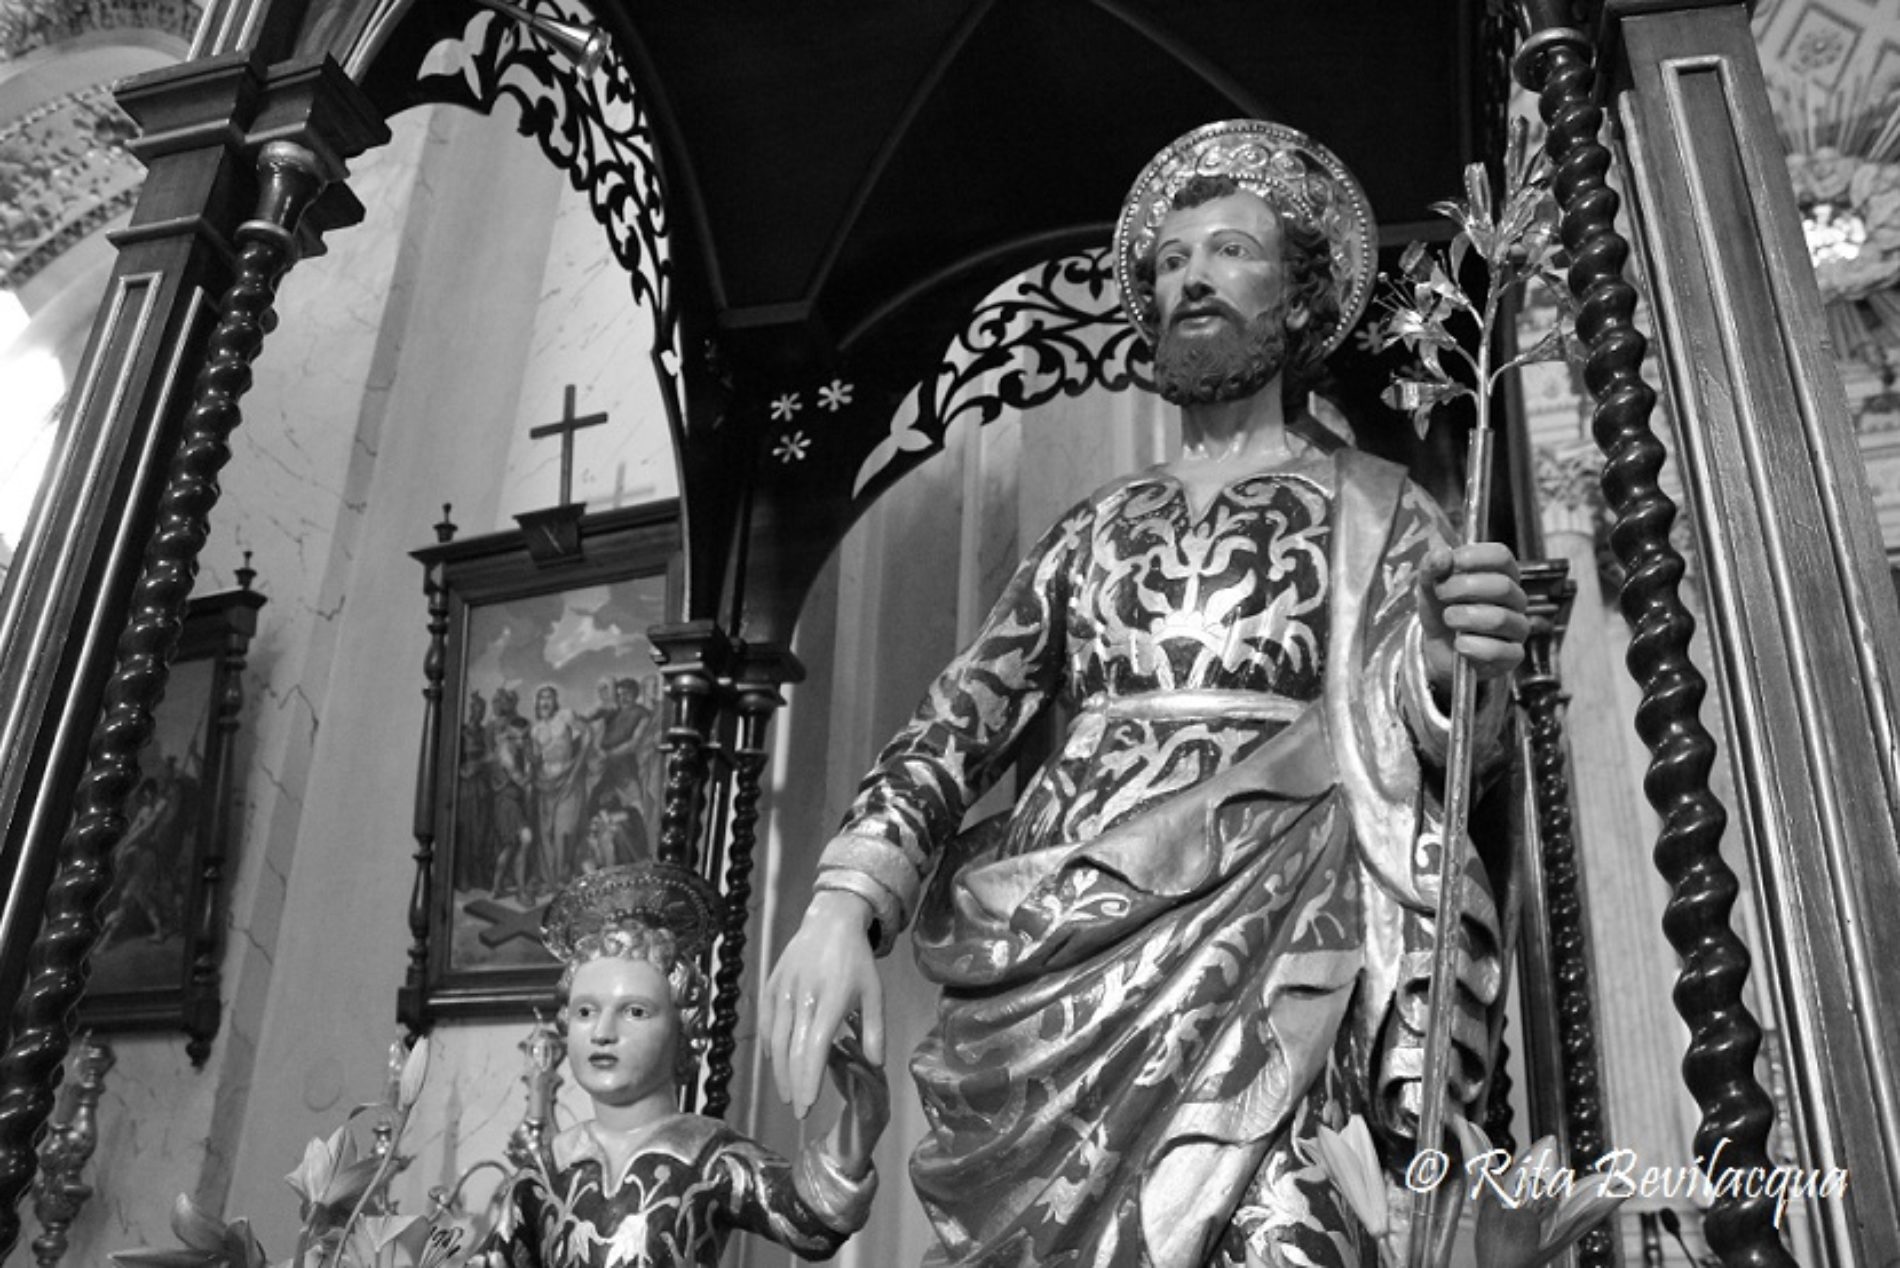 Alcune orazioni dialettali tratte dalla devozione barrese in onore di San Giuseppe